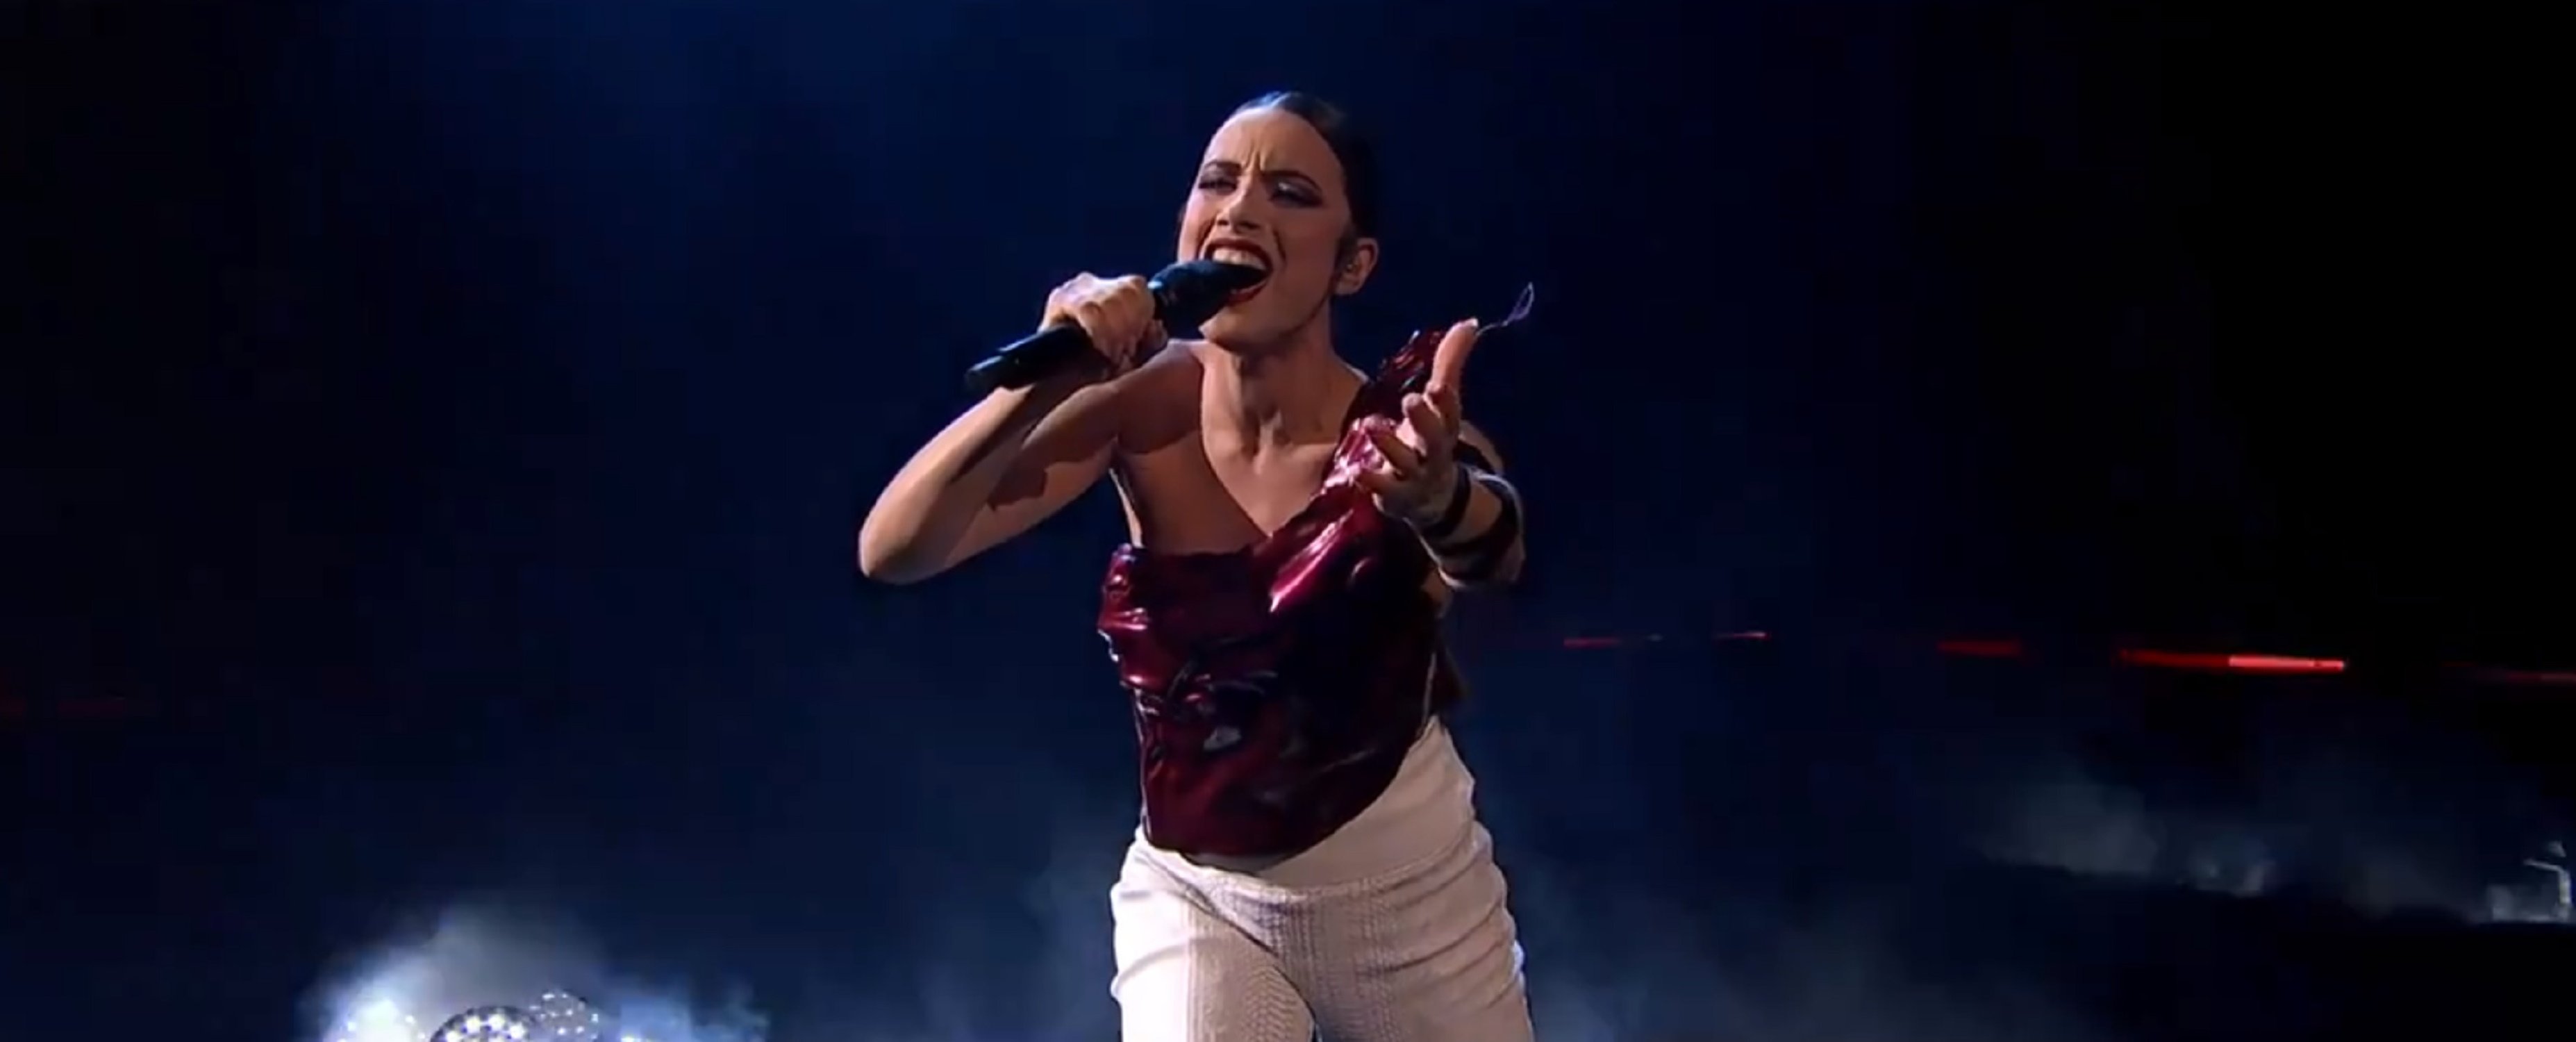 Blanca Paloma ya ha actuado: qué ha hecho justo al bajar del escenario de Eurovisión, en los pasillos